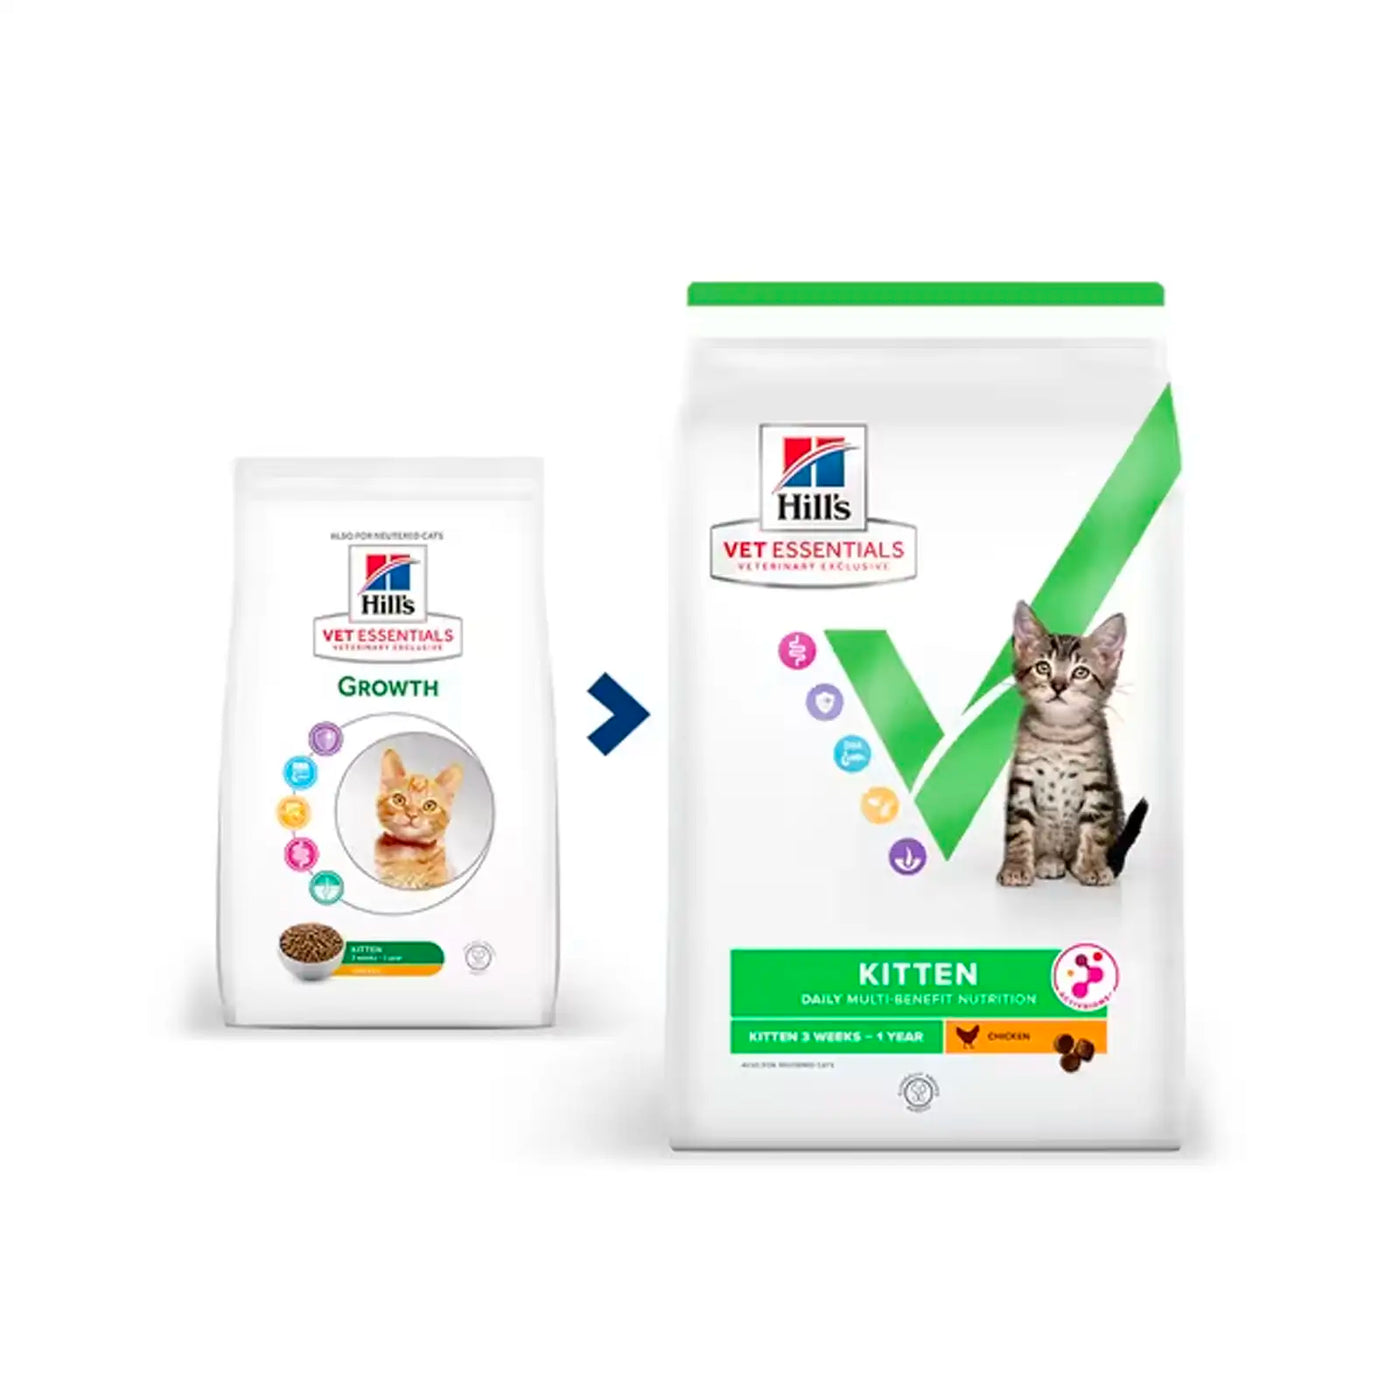 Hill's VetEssentials Diet Kitten Food - Vetopia Online Store